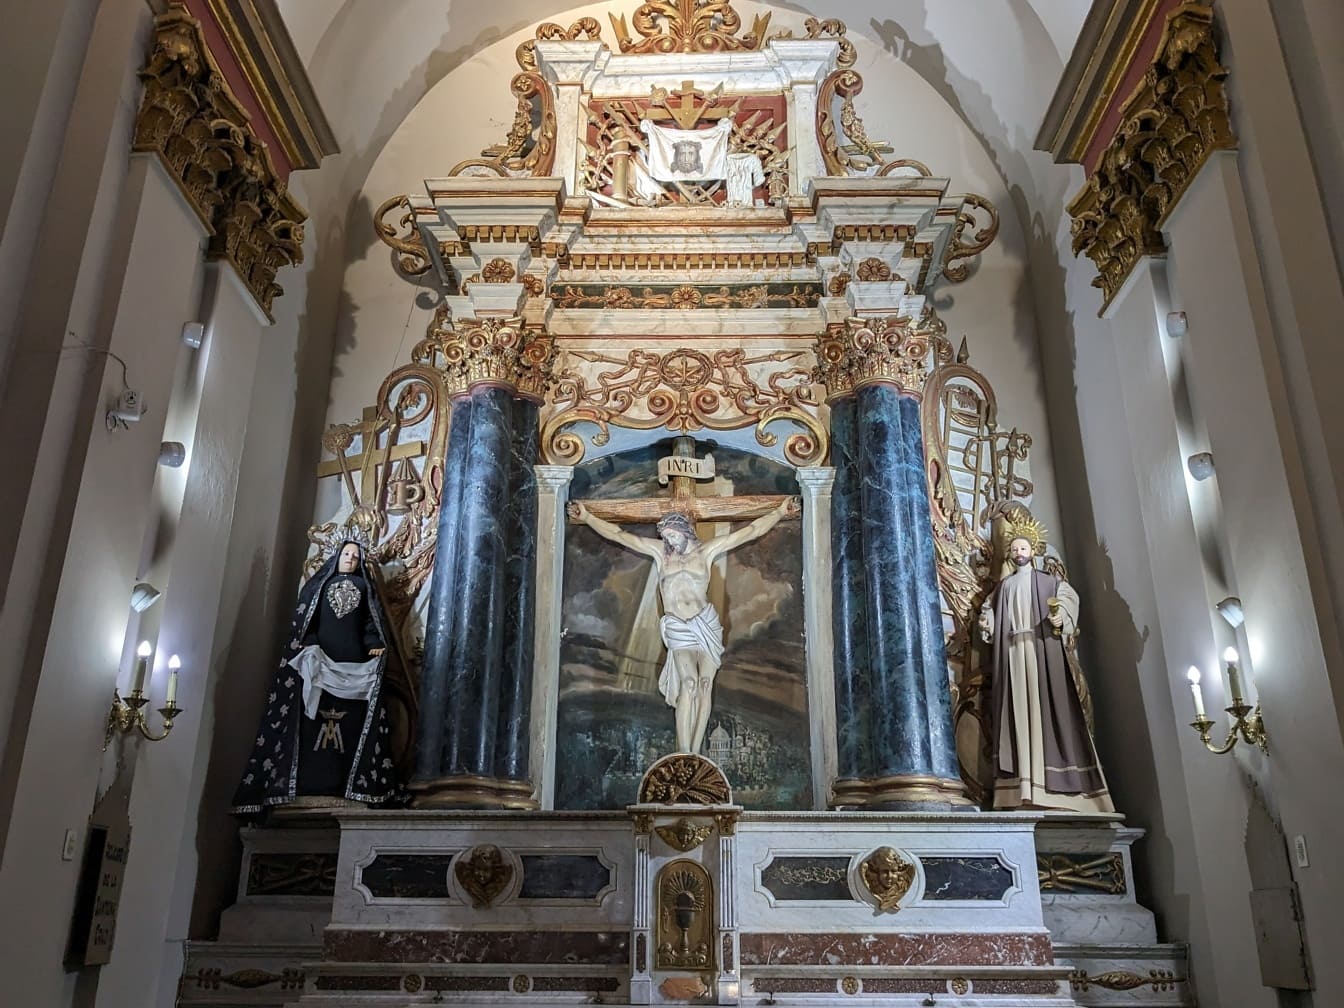 Utsmyckat altare med staty av en Jesus Kristus på ett kors som visar uppståndelsen i sydamerikansk katolsk kyrka